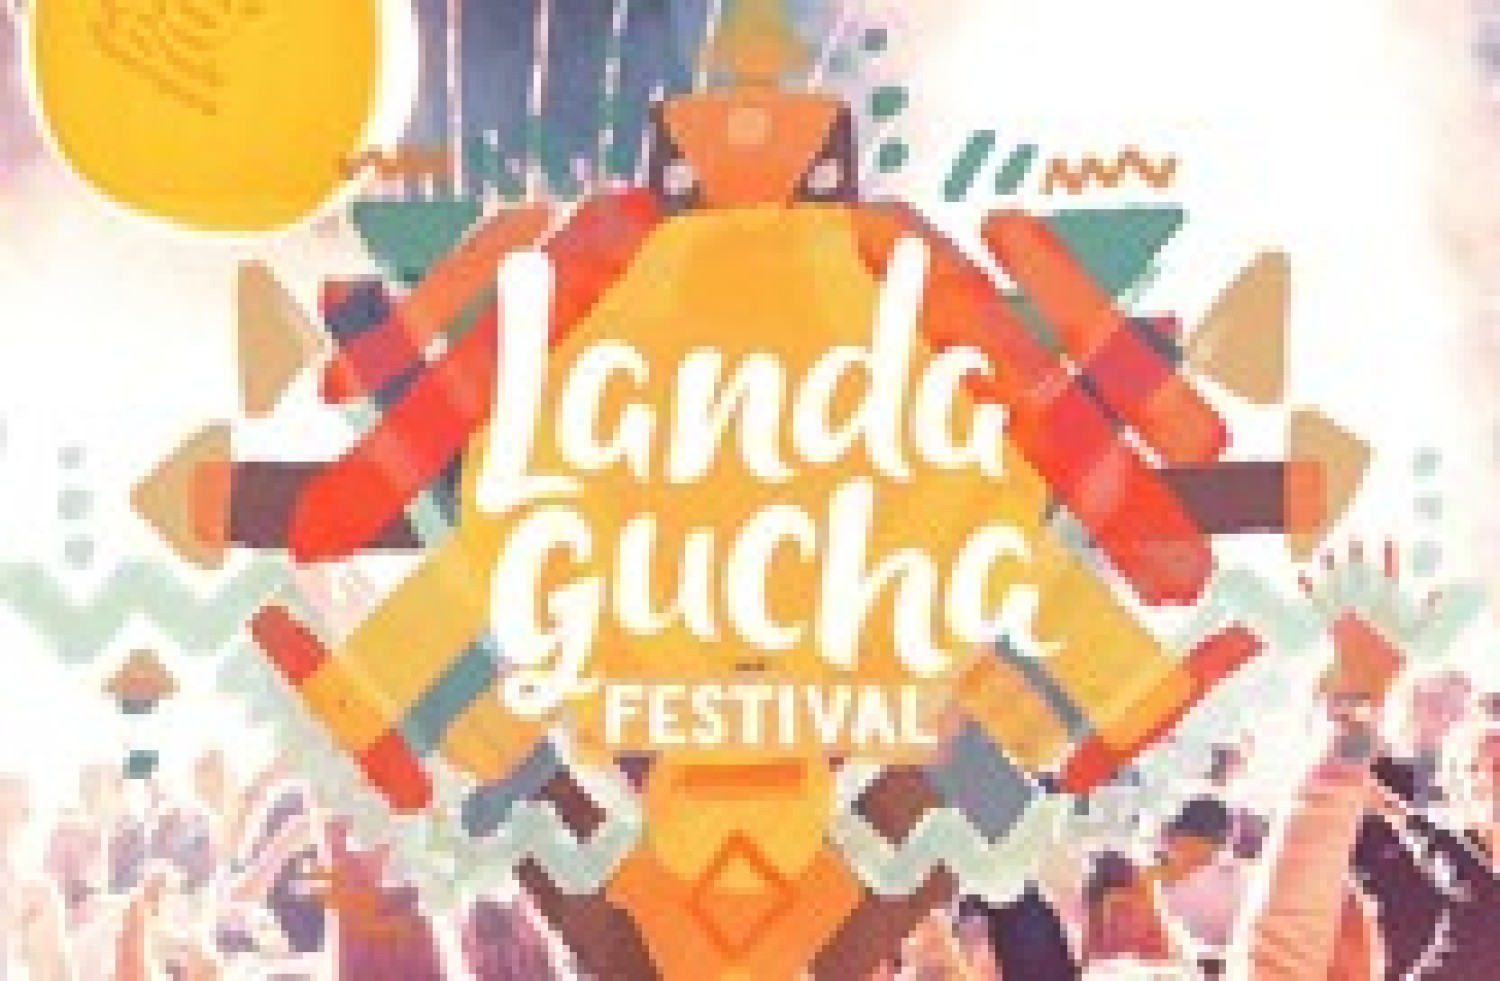 Party nieuws: LandaGucha Festival: mis het niet!